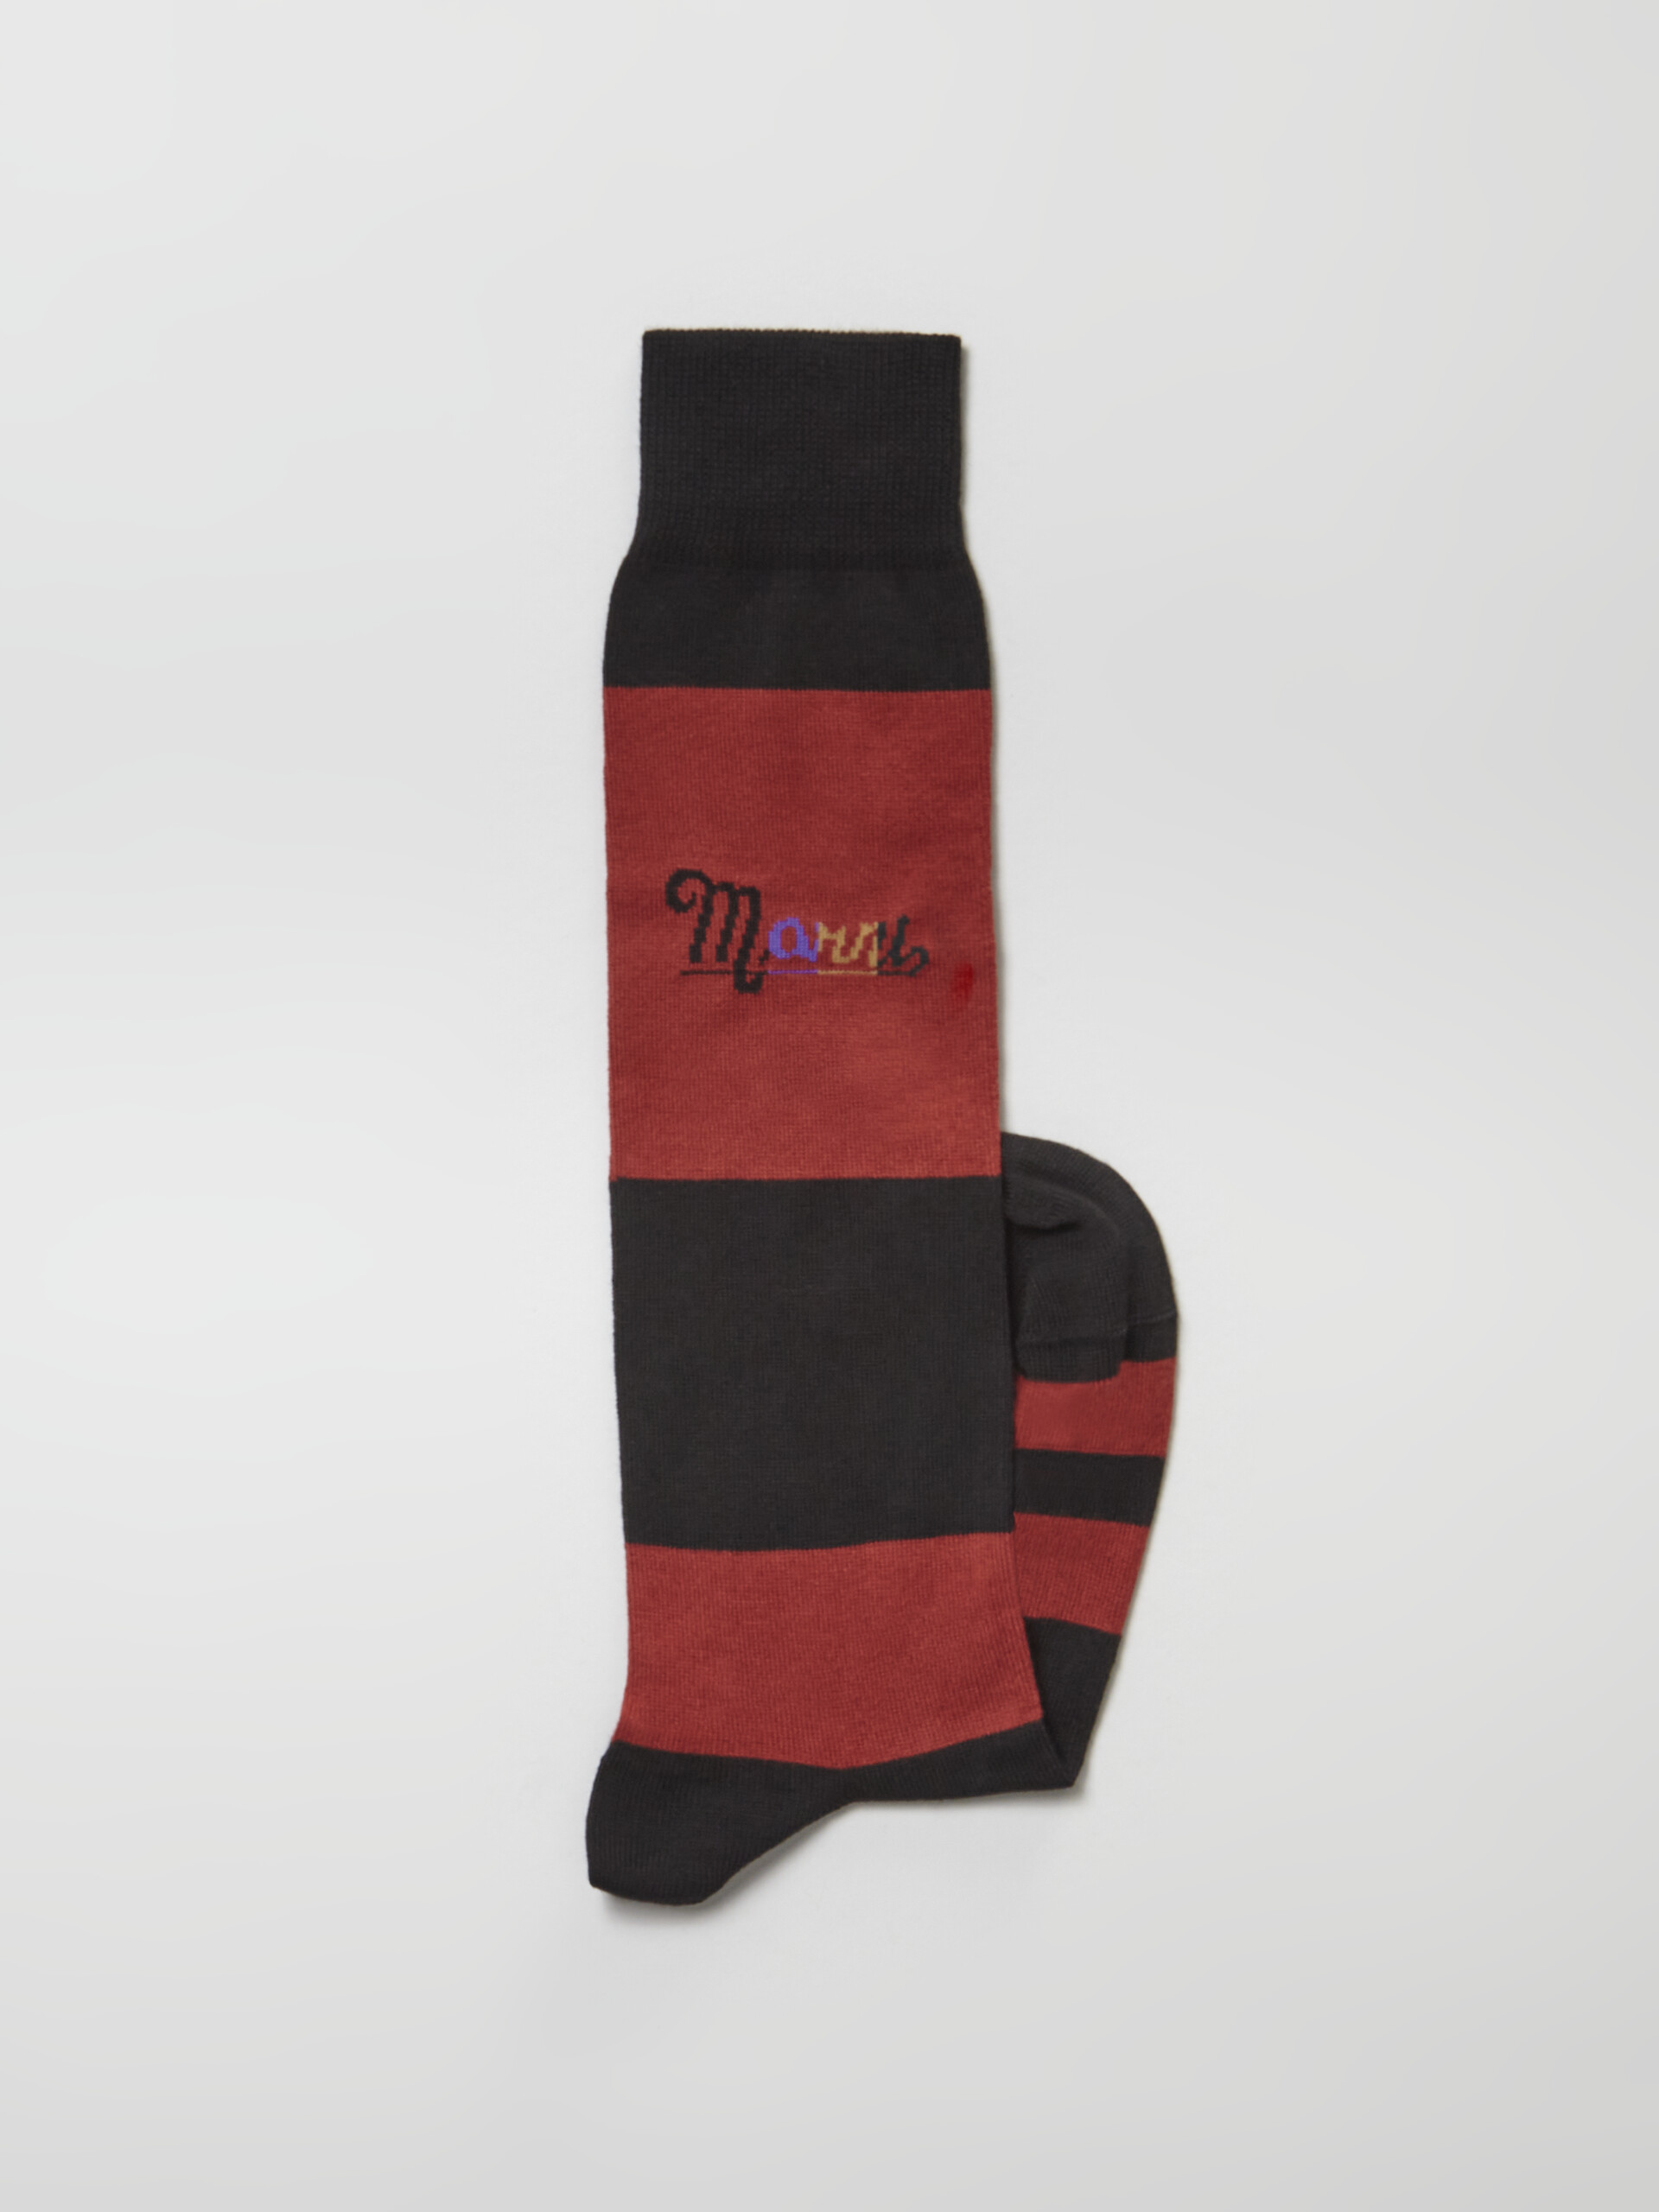 Calza in cotone rigato con logo intarsio arcobaleno nero e rosso - Calze - Image 2